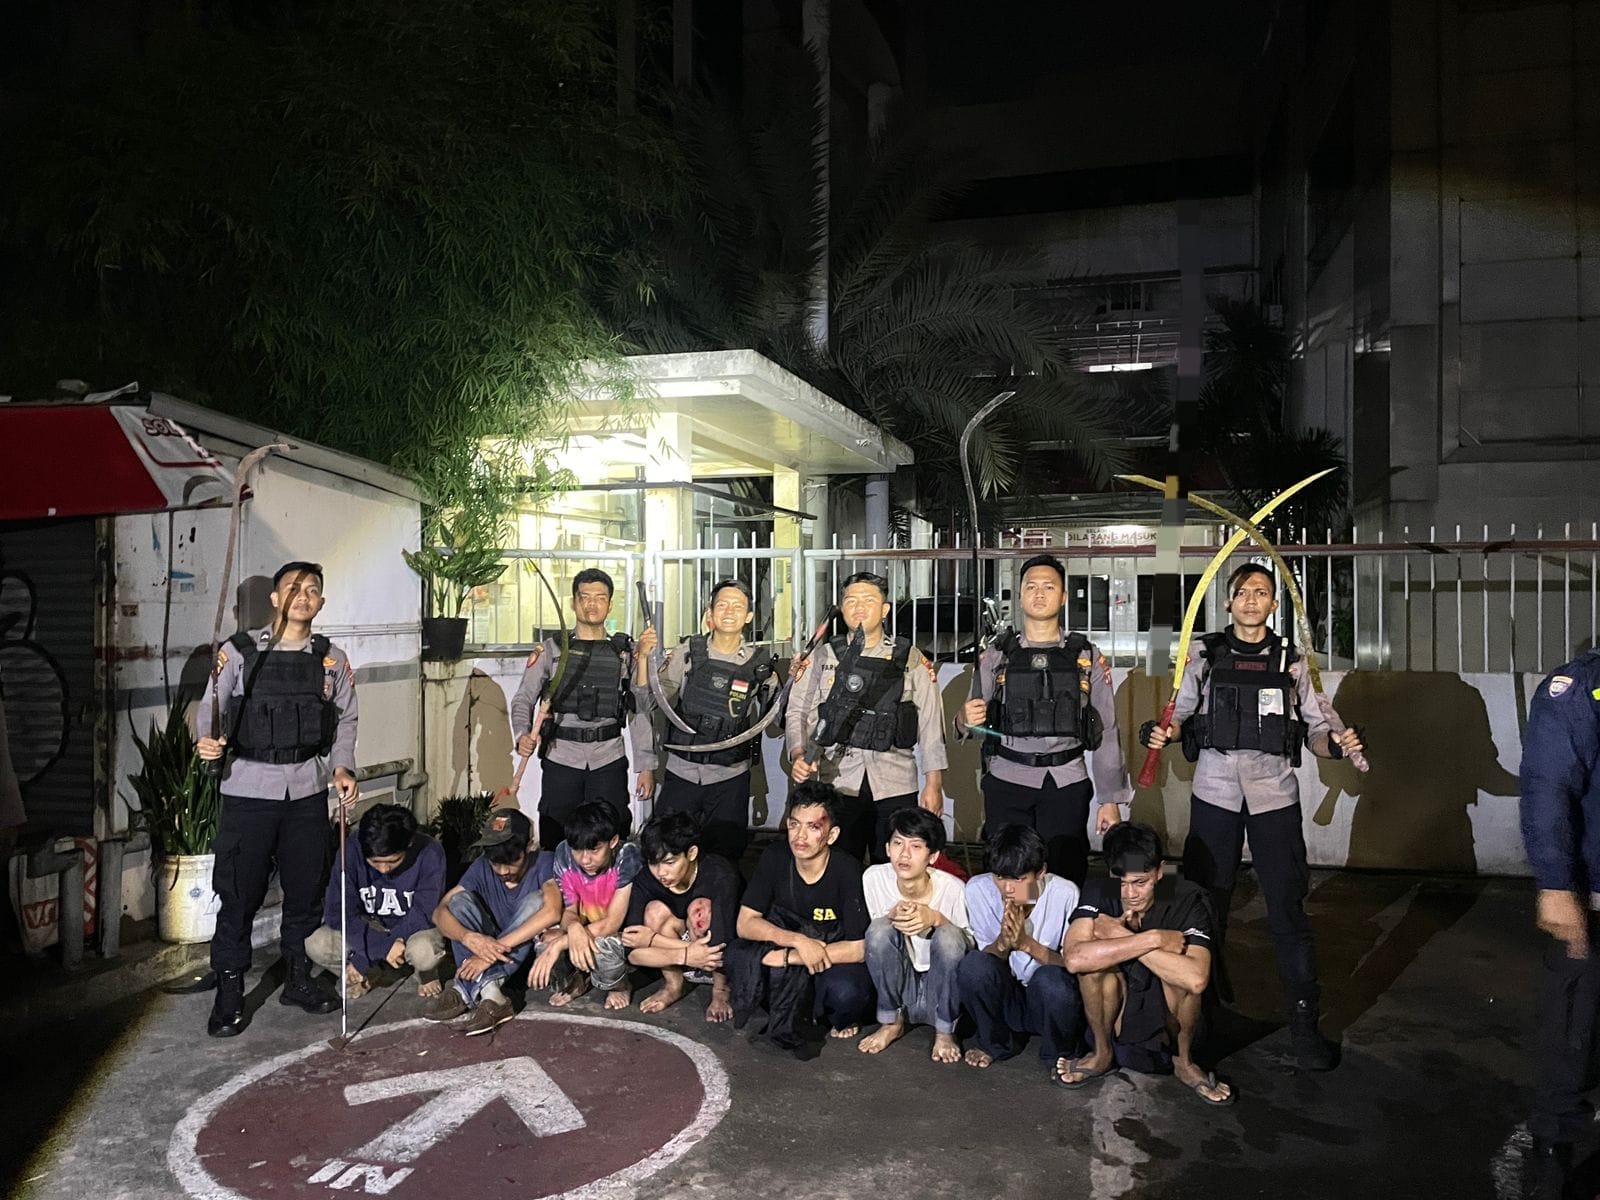 Delapan Remaja Diciduk Tim Patroli Perintis Presisi Karena Terlibat dalam Tawuran di Pasar Minggu